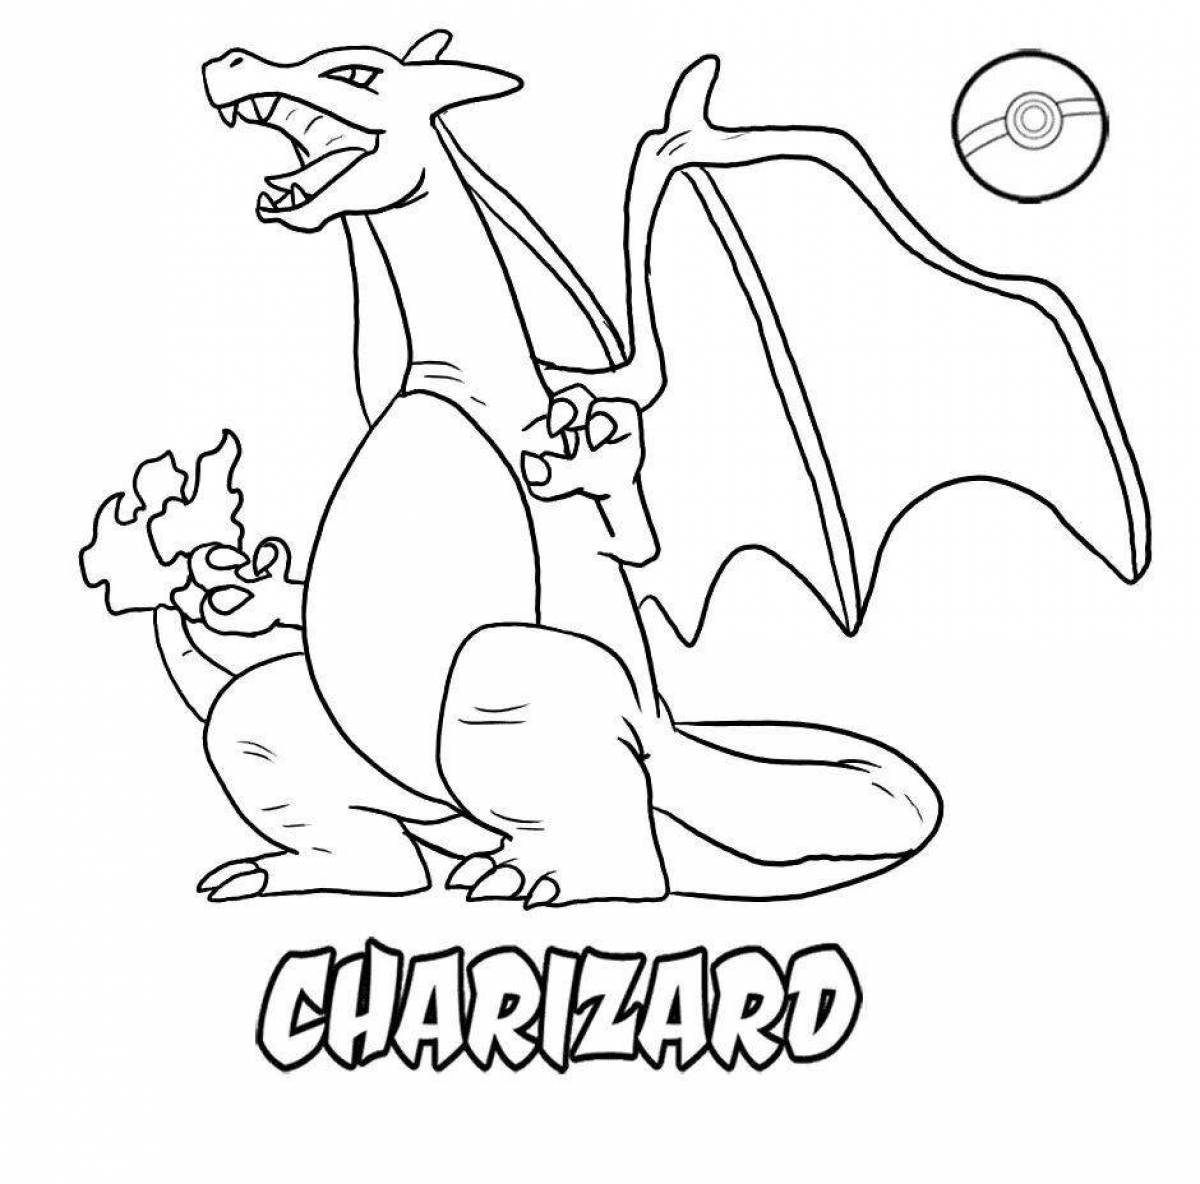 Charizard pokemon dazzling coloring book